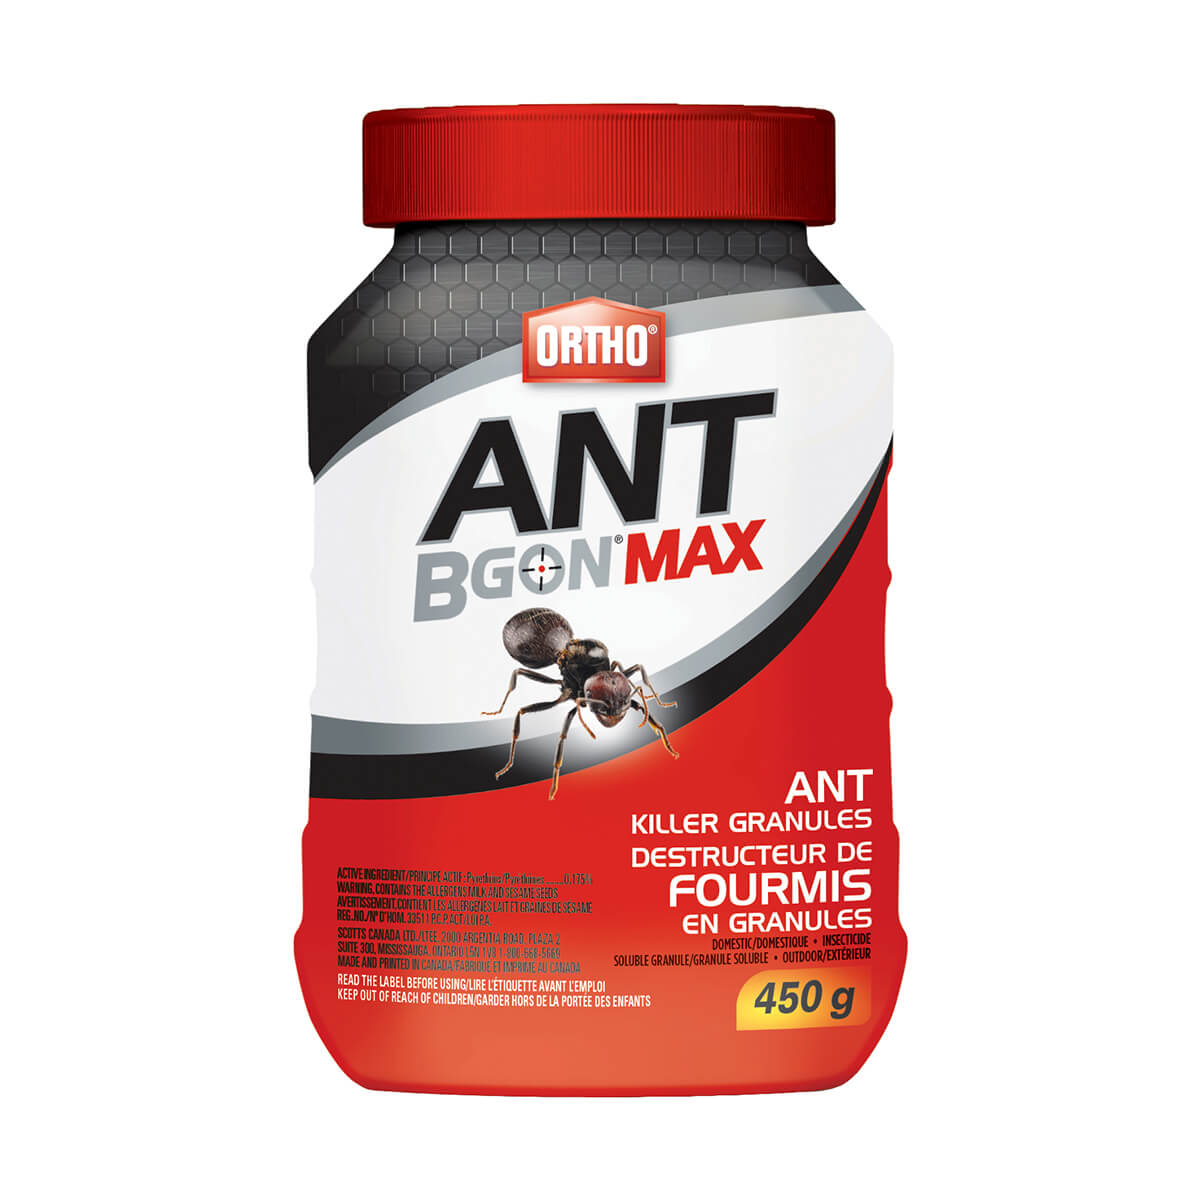 Ortho® Ant B Gon™ Max Ant Killer Granules - 450 g